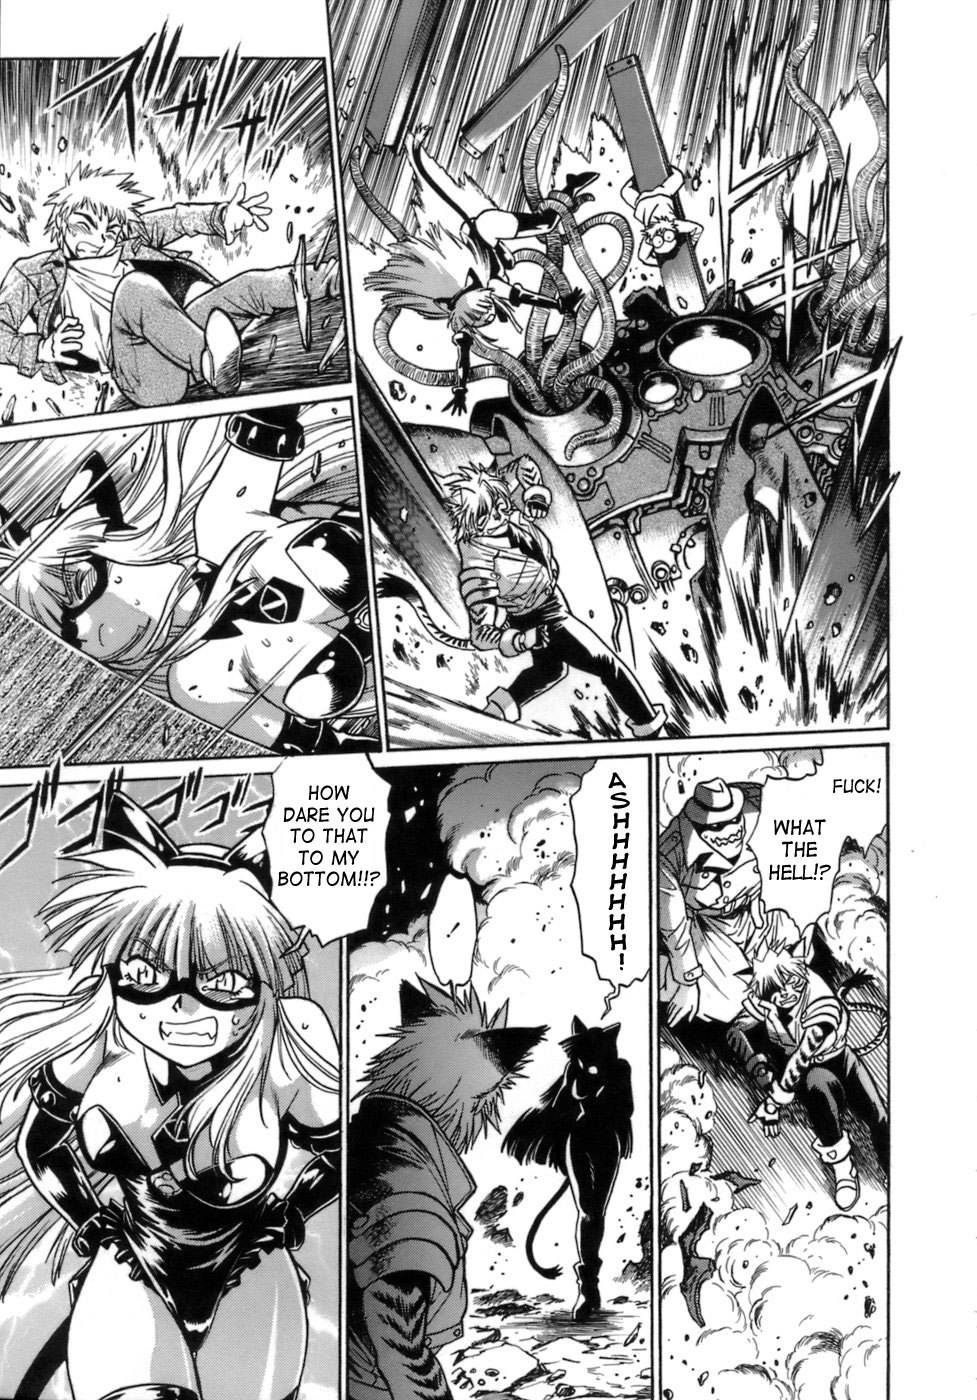 Tail Chaser Vol.1 61 hentai manga